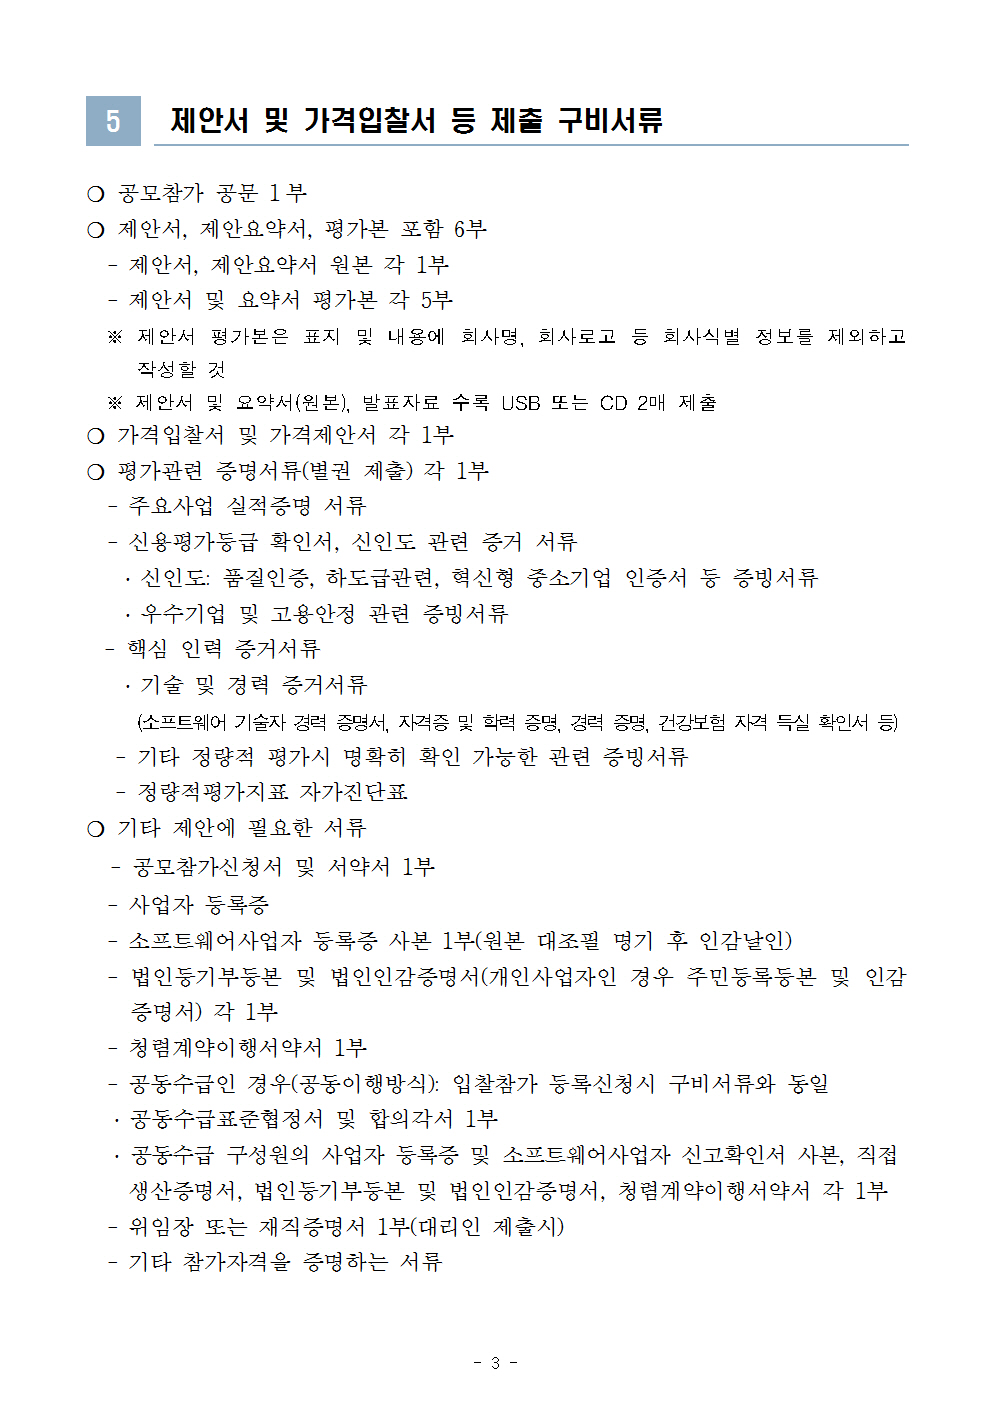 한국여성인권진흥원 2018년도 그룹웨어시스템 유지보수 공모 시행 공고문 3page.jpg